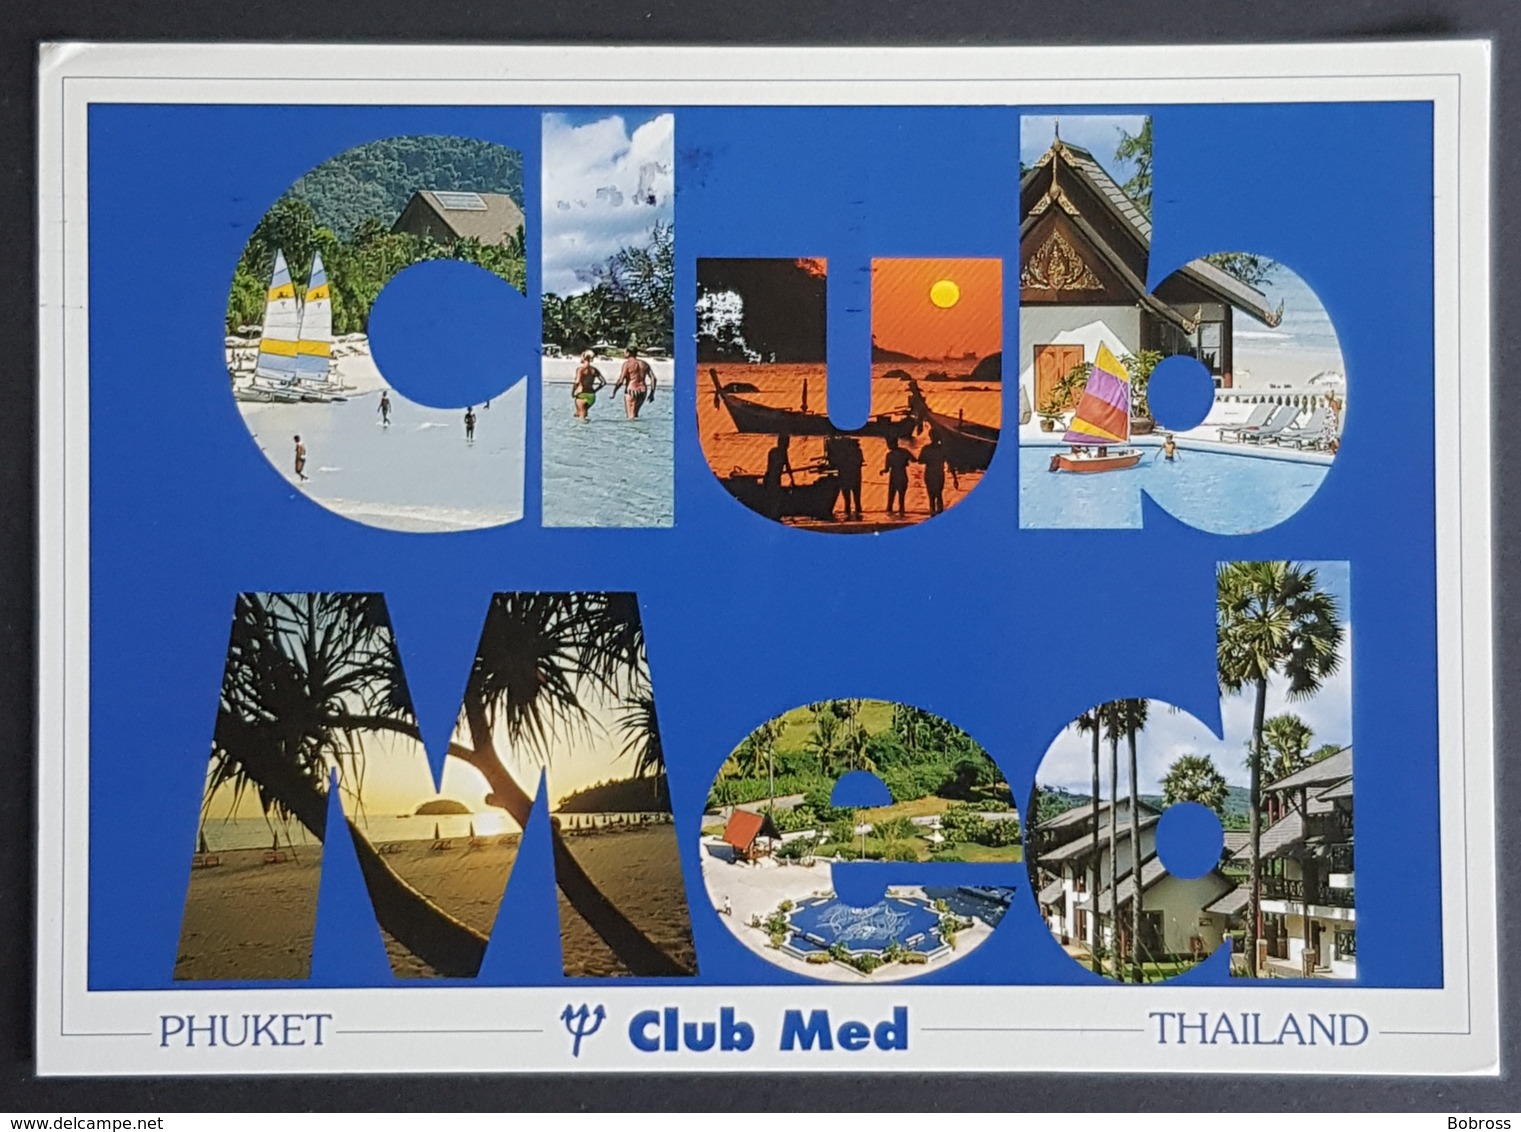 Club Med, Phuket, Thailand - Paris France, Used - Thailand